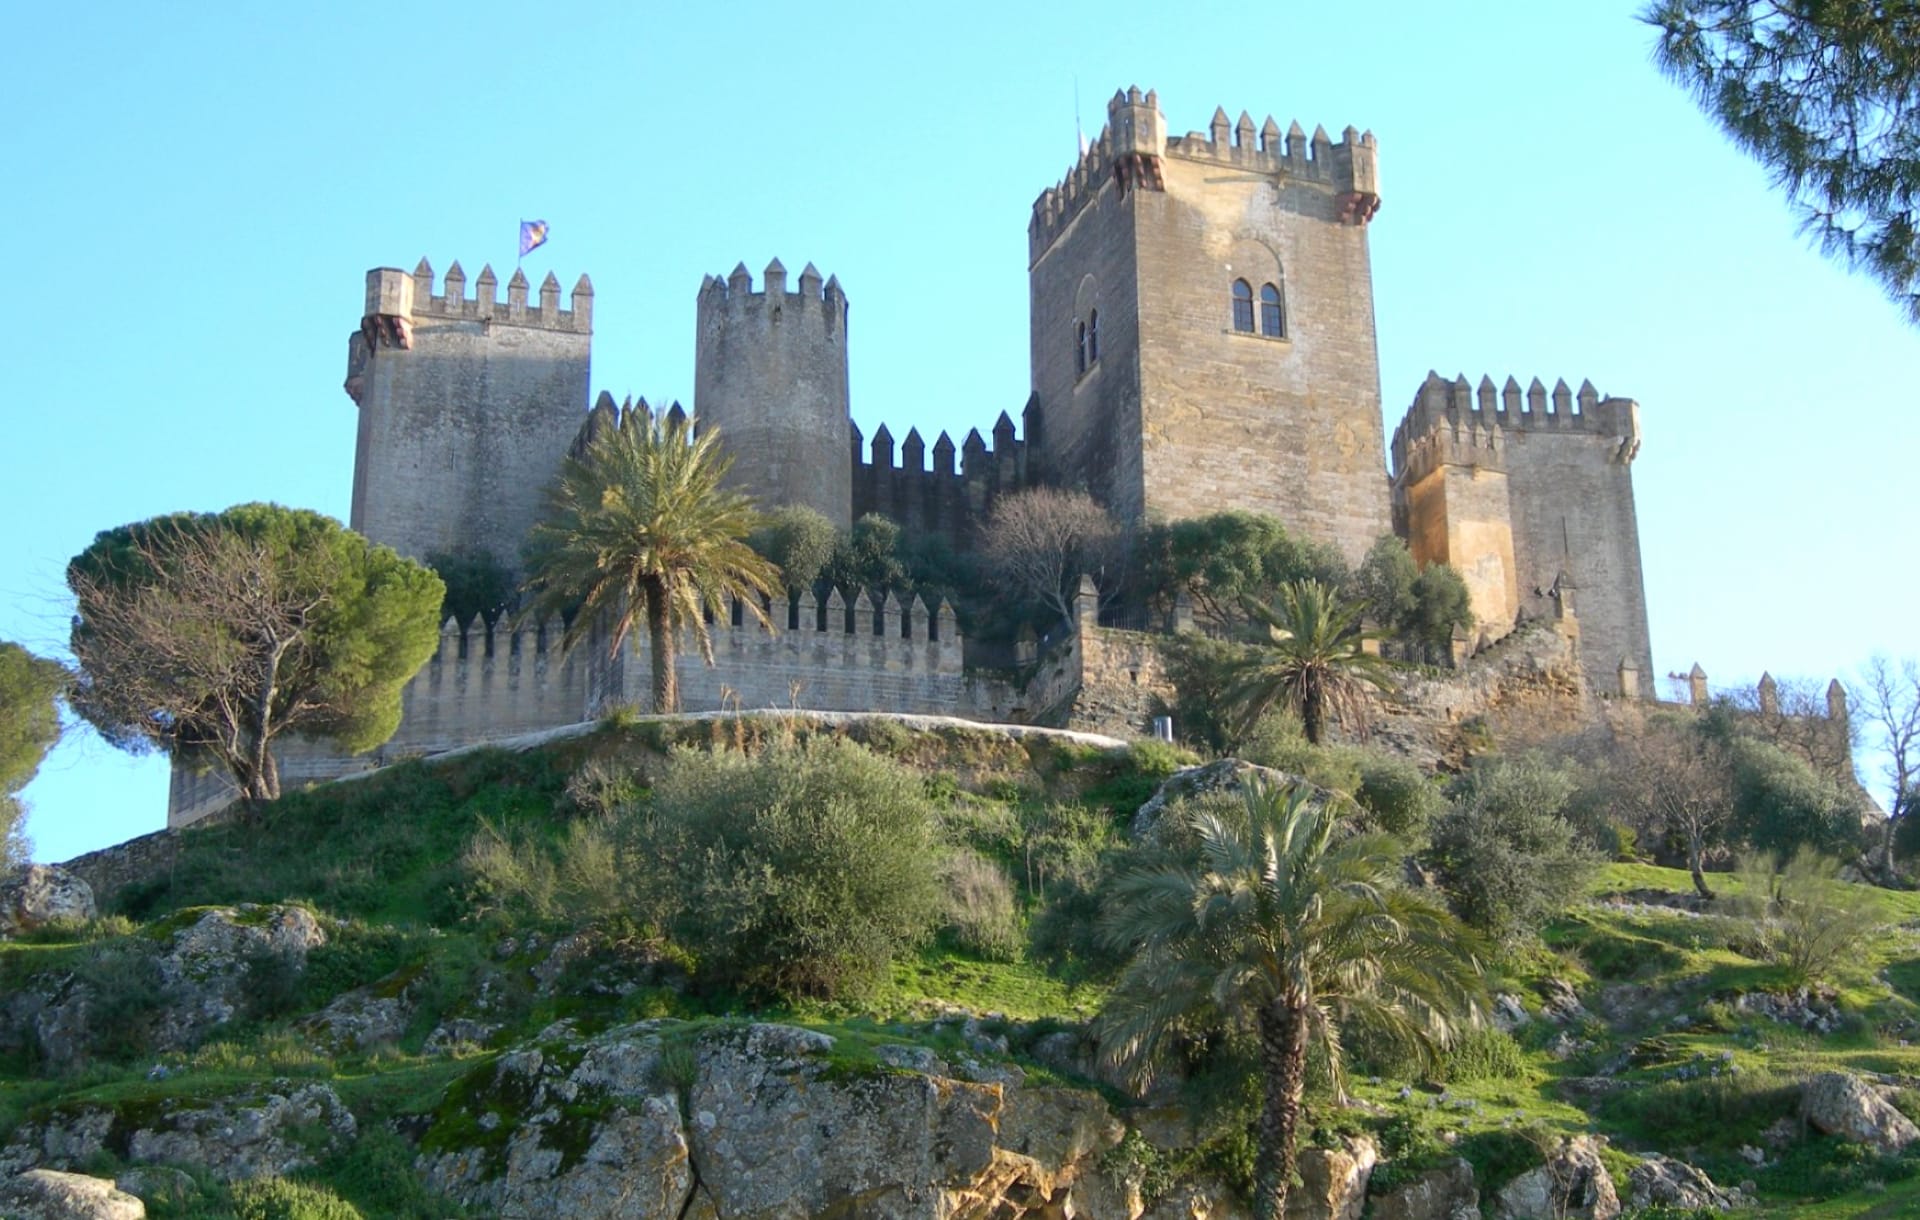 Castillo de Almodovar del Rio at 1152 x 864 size wallpapers HD quality